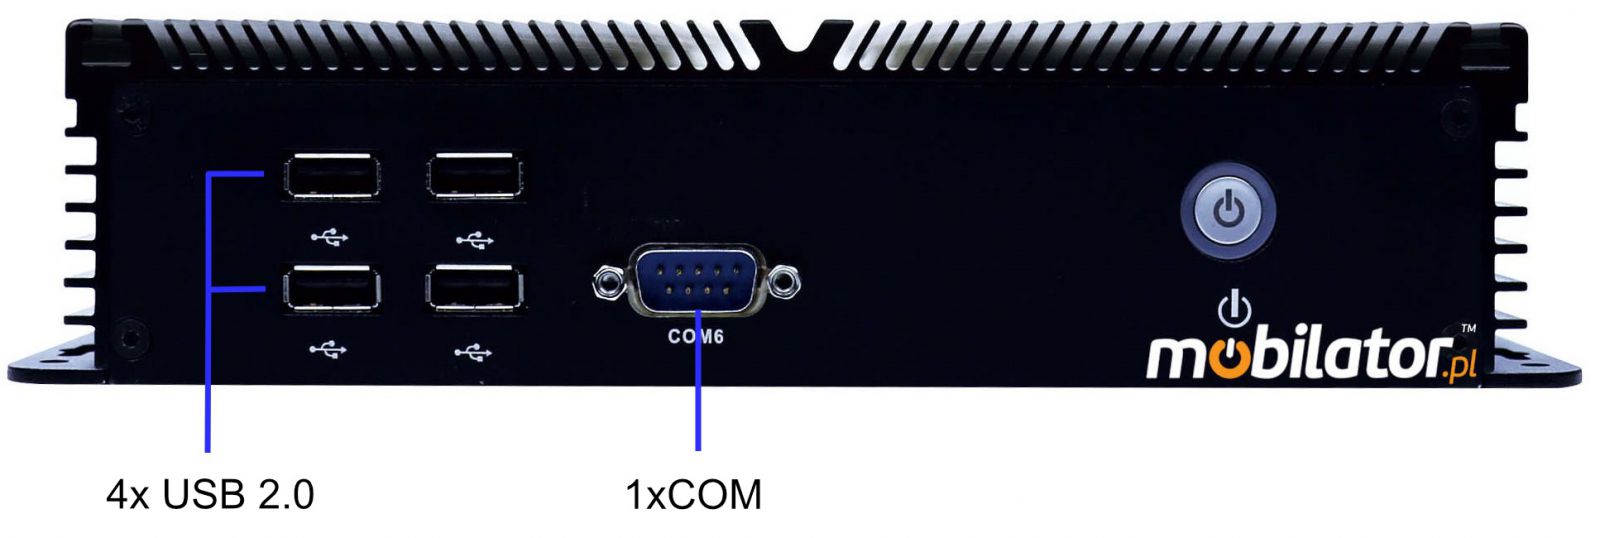 IBOX-205 Komputer przemysłowy  dla zastosowań magazynowych z modułem WiFi 3G 4G 6x COM